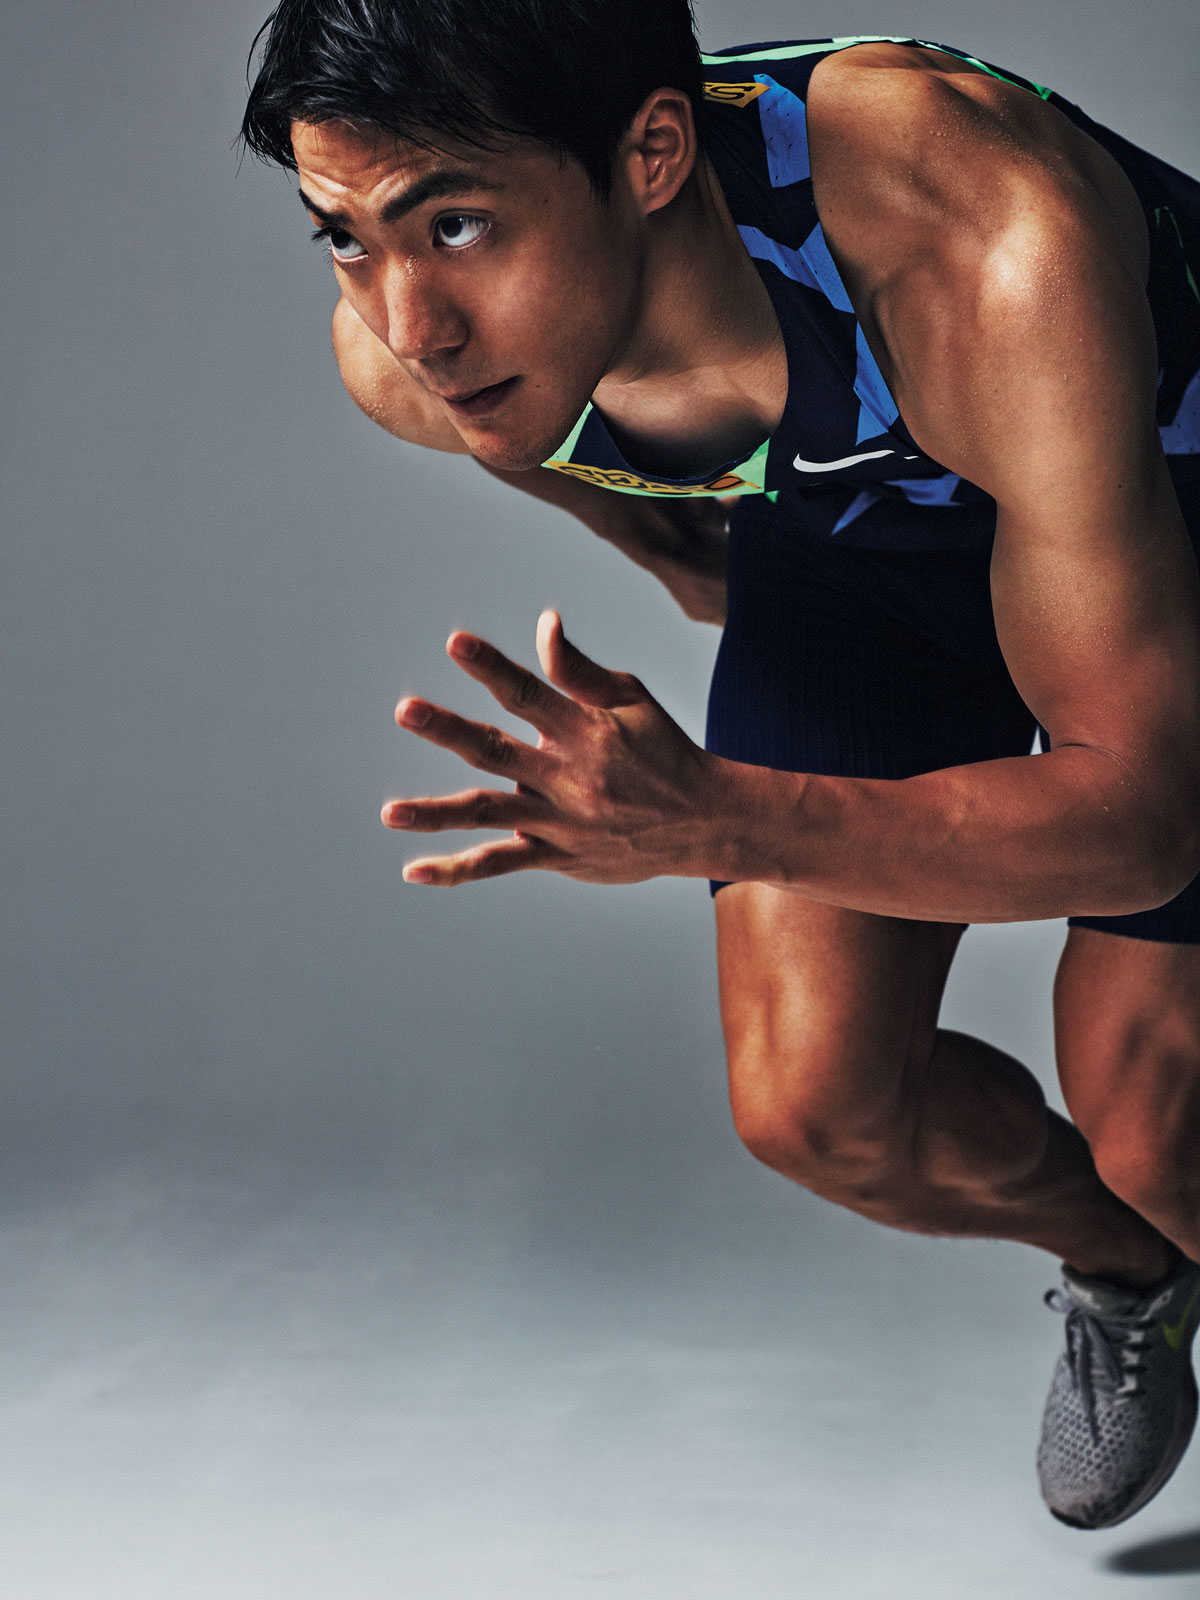 この夏のイケメン日本代表選手 男子100m 山縣亮太 さんが語るファッションとスプリントについて Lifestyle Safari Online